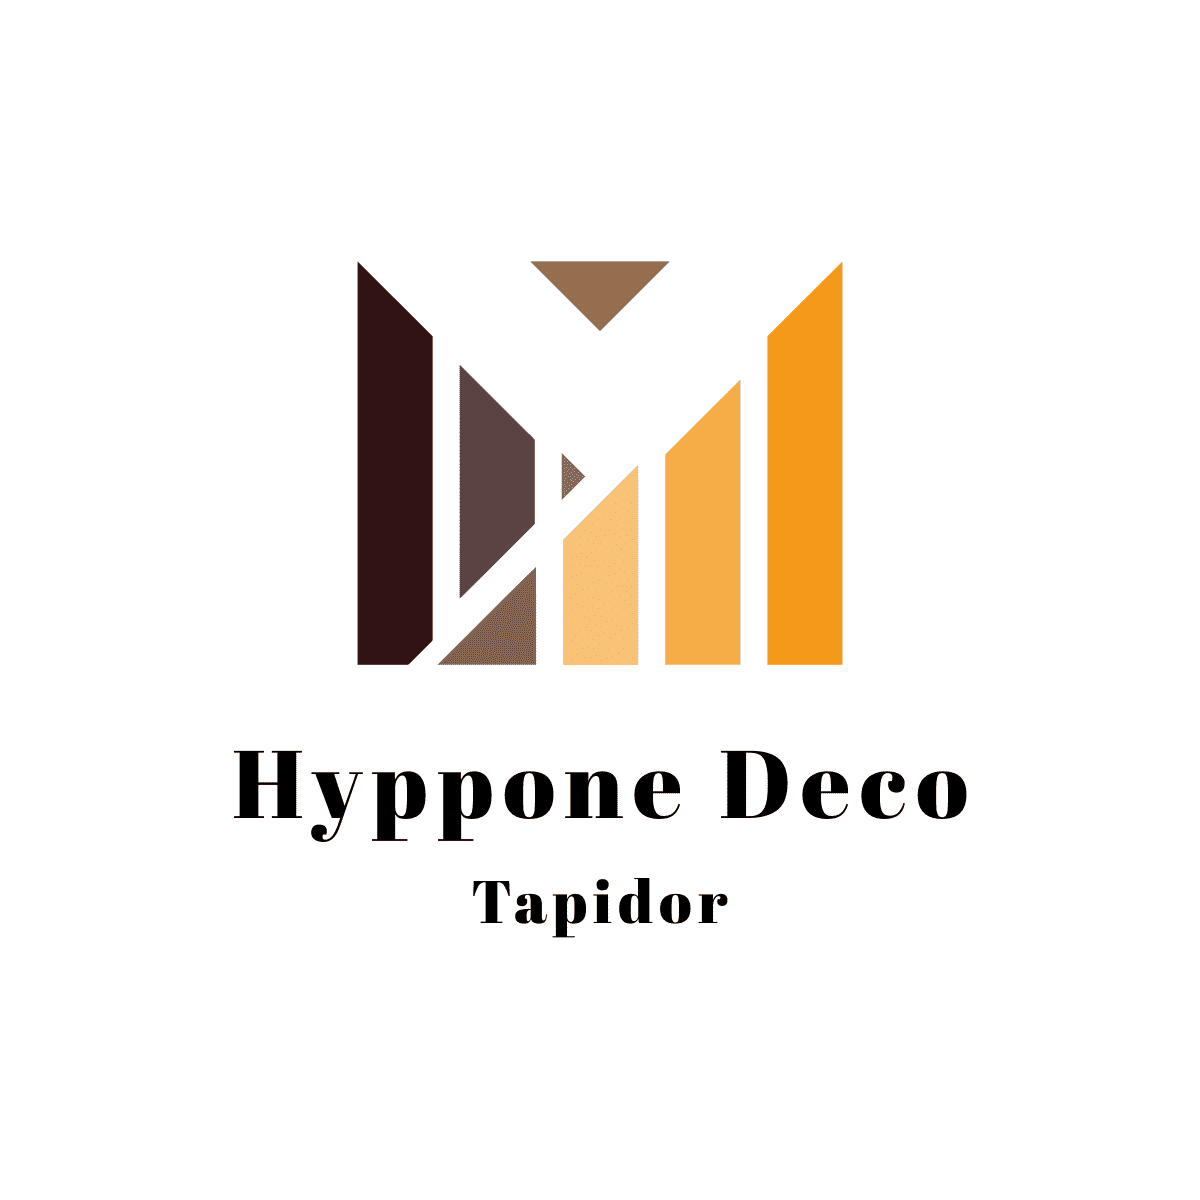 Hyppone Deco